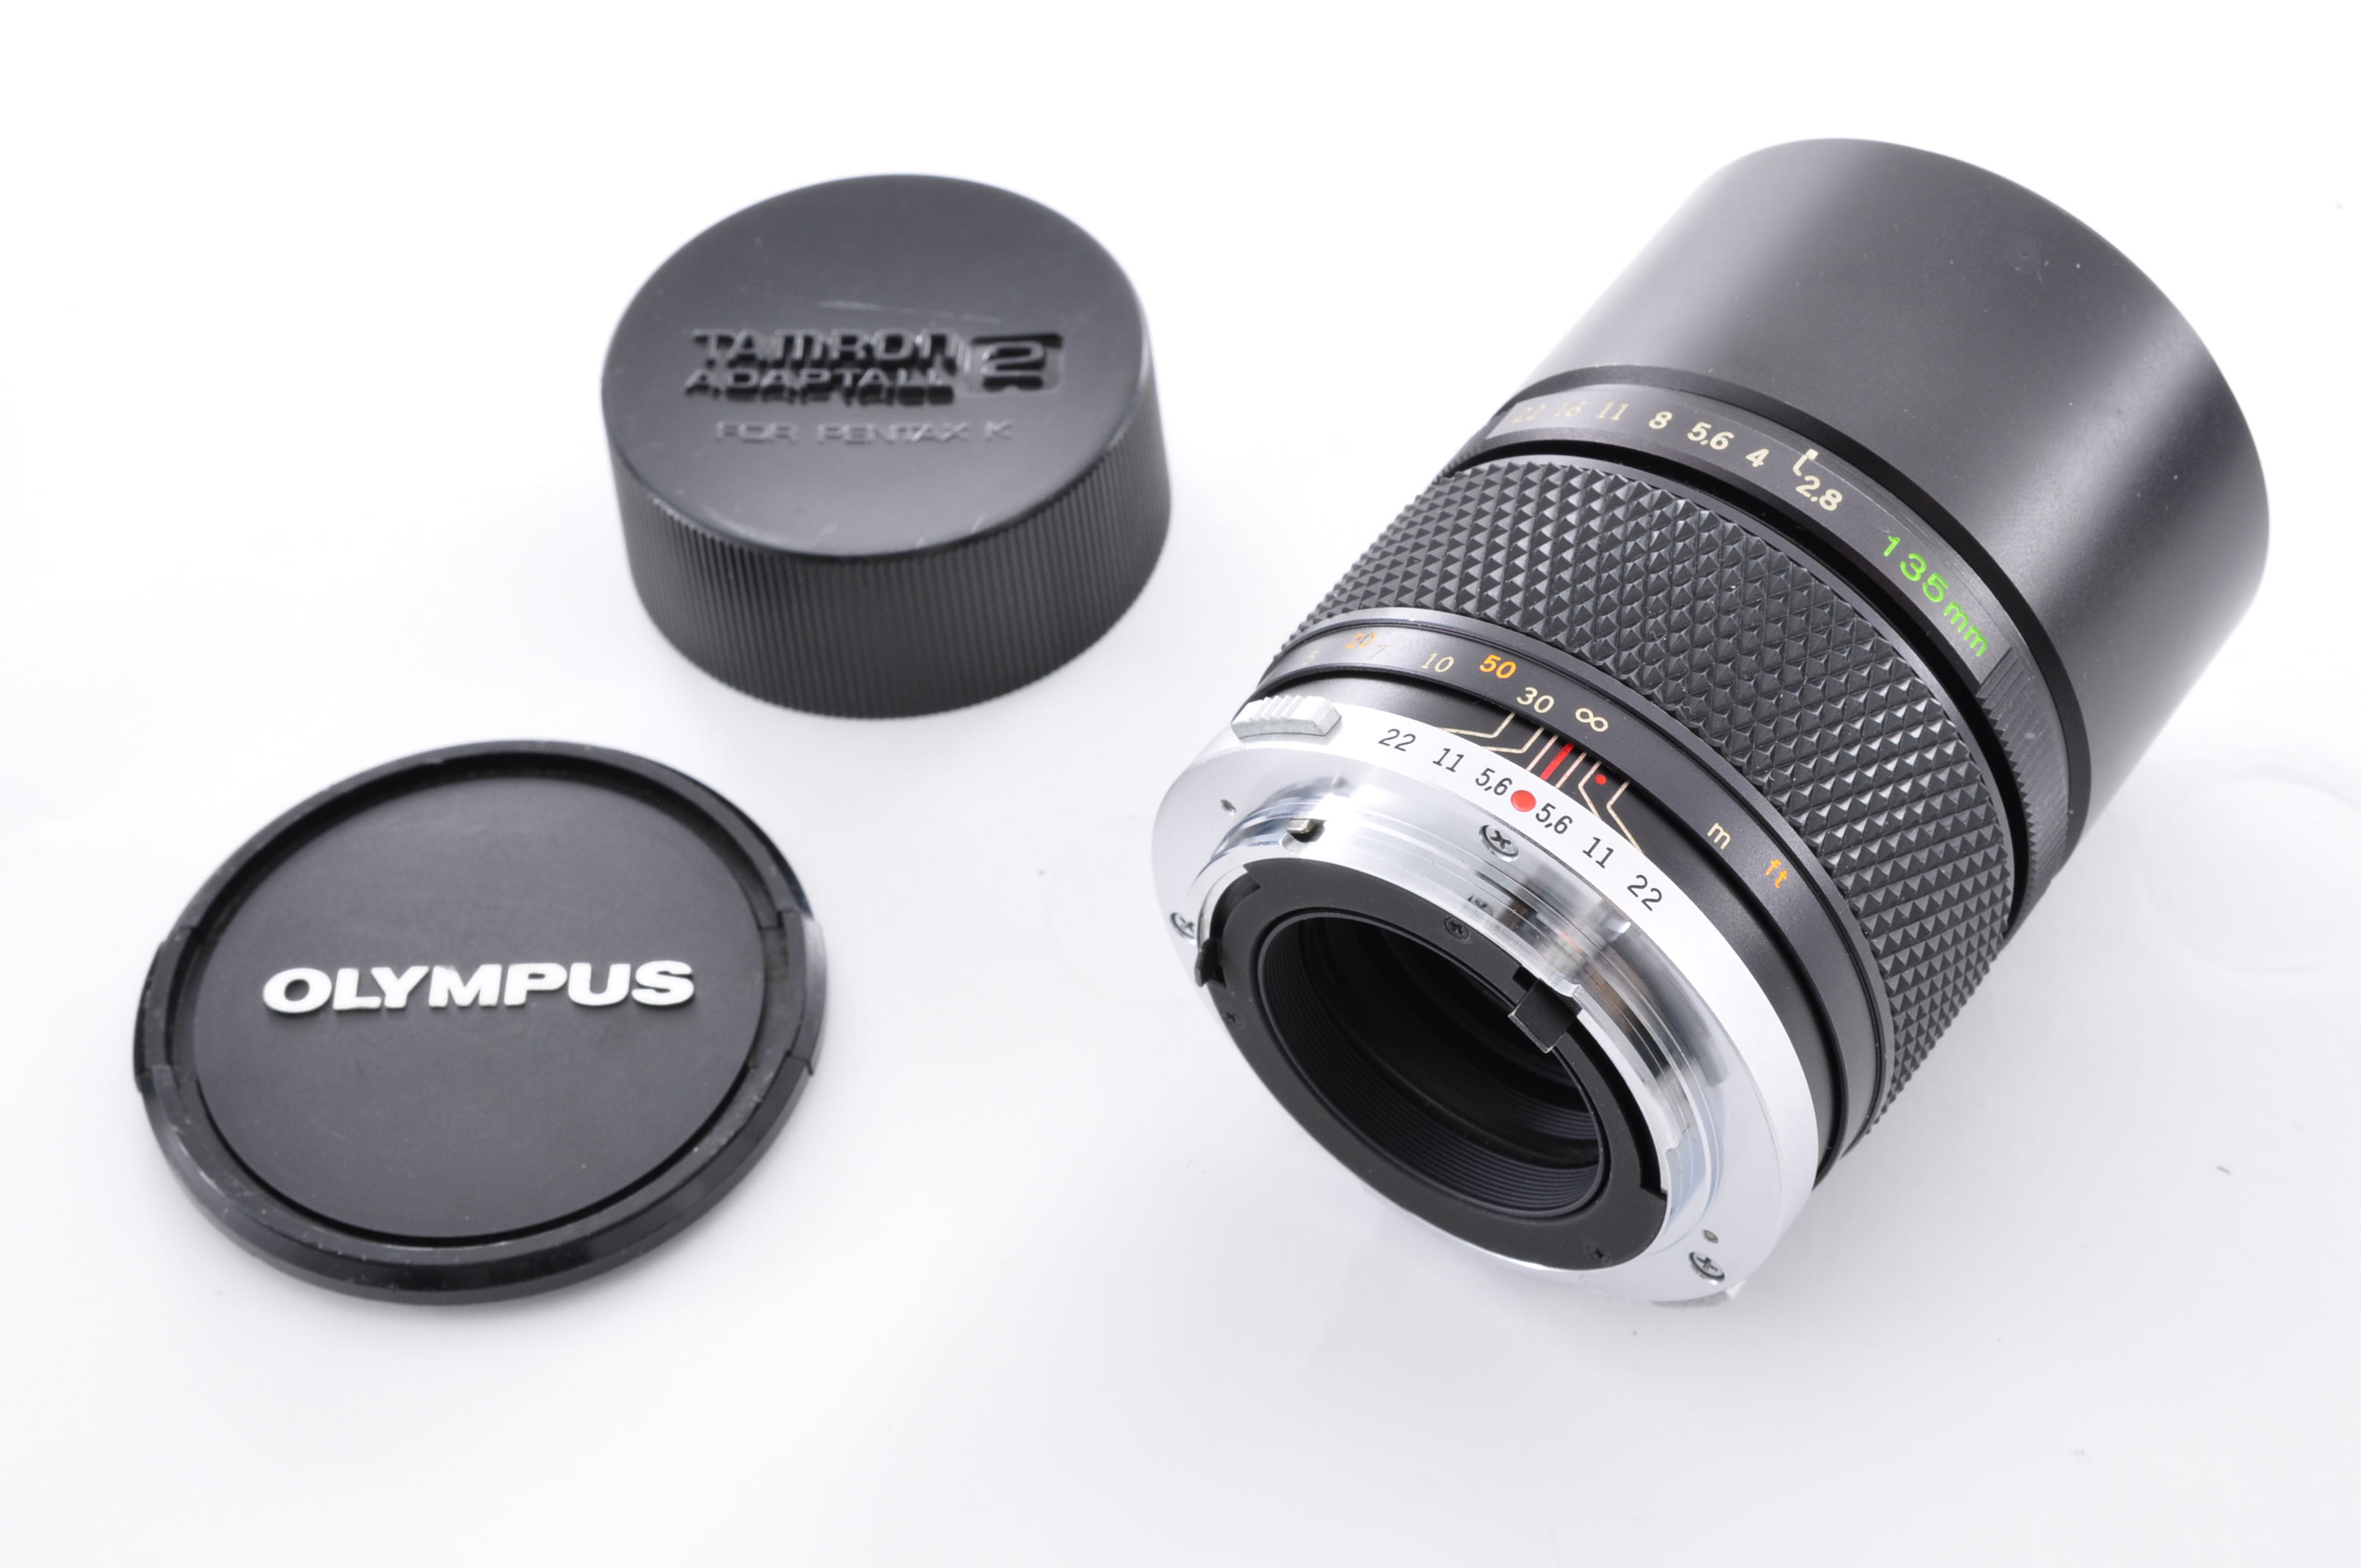 Olympus OM-System Zuiko Auto-T MC 135mm F/2.8 Lens w/Cap [Near Mint] From Japan img12